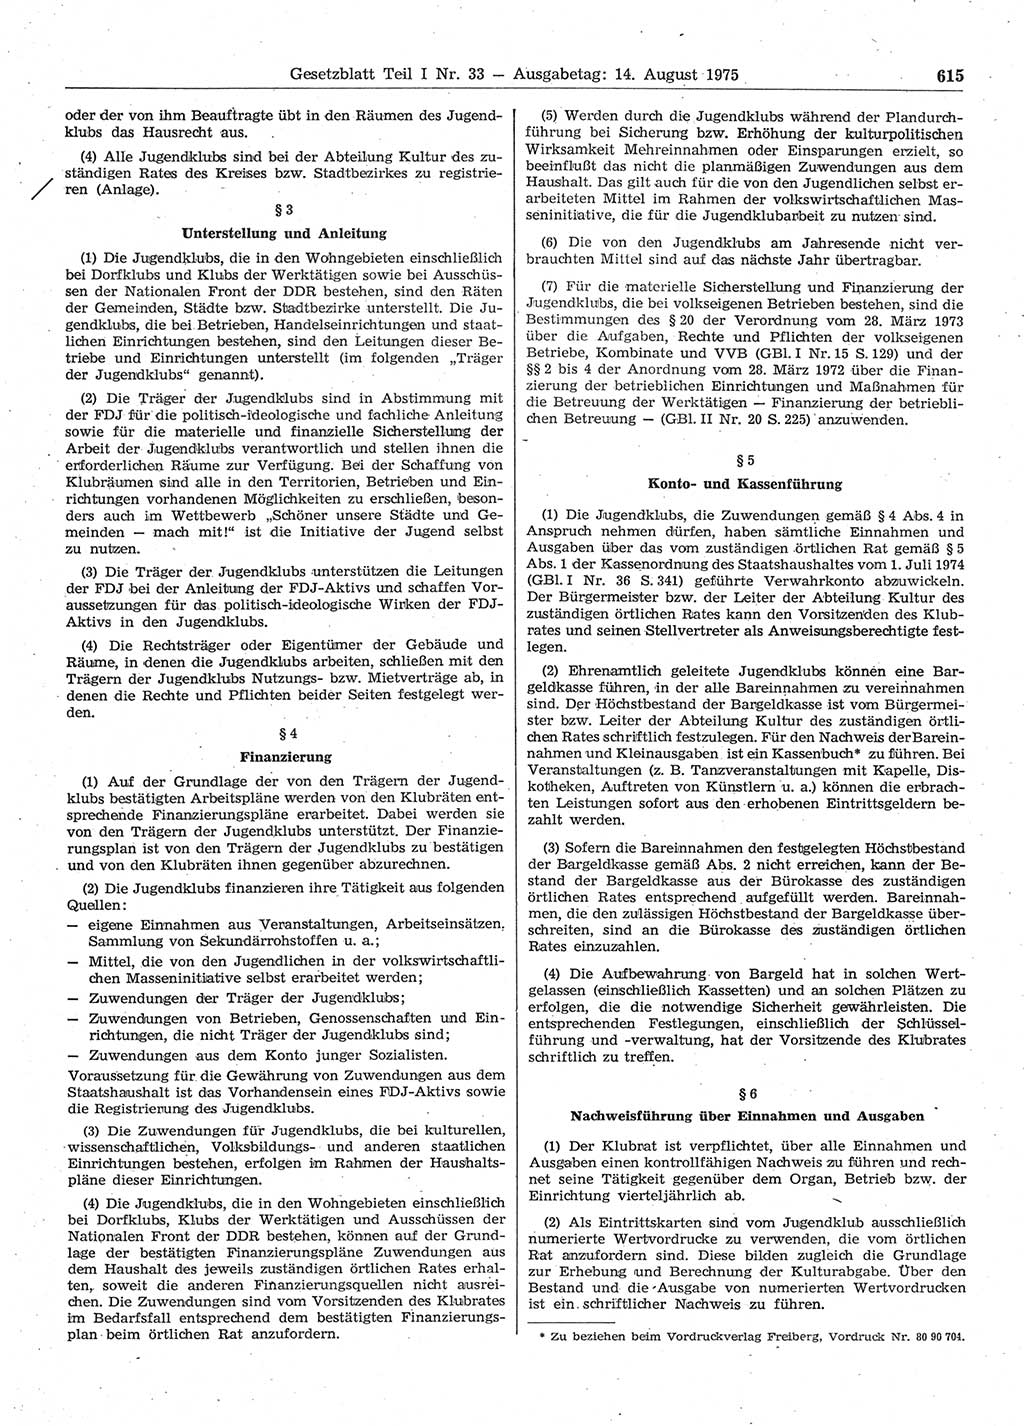 Gesetzblatt (GBl.) der Deutschen Demokratischen Republik (DDR) Teil Ⅰ 1975, Seite 615 (GBl. DDR Ⅰ 1975, S. 615)